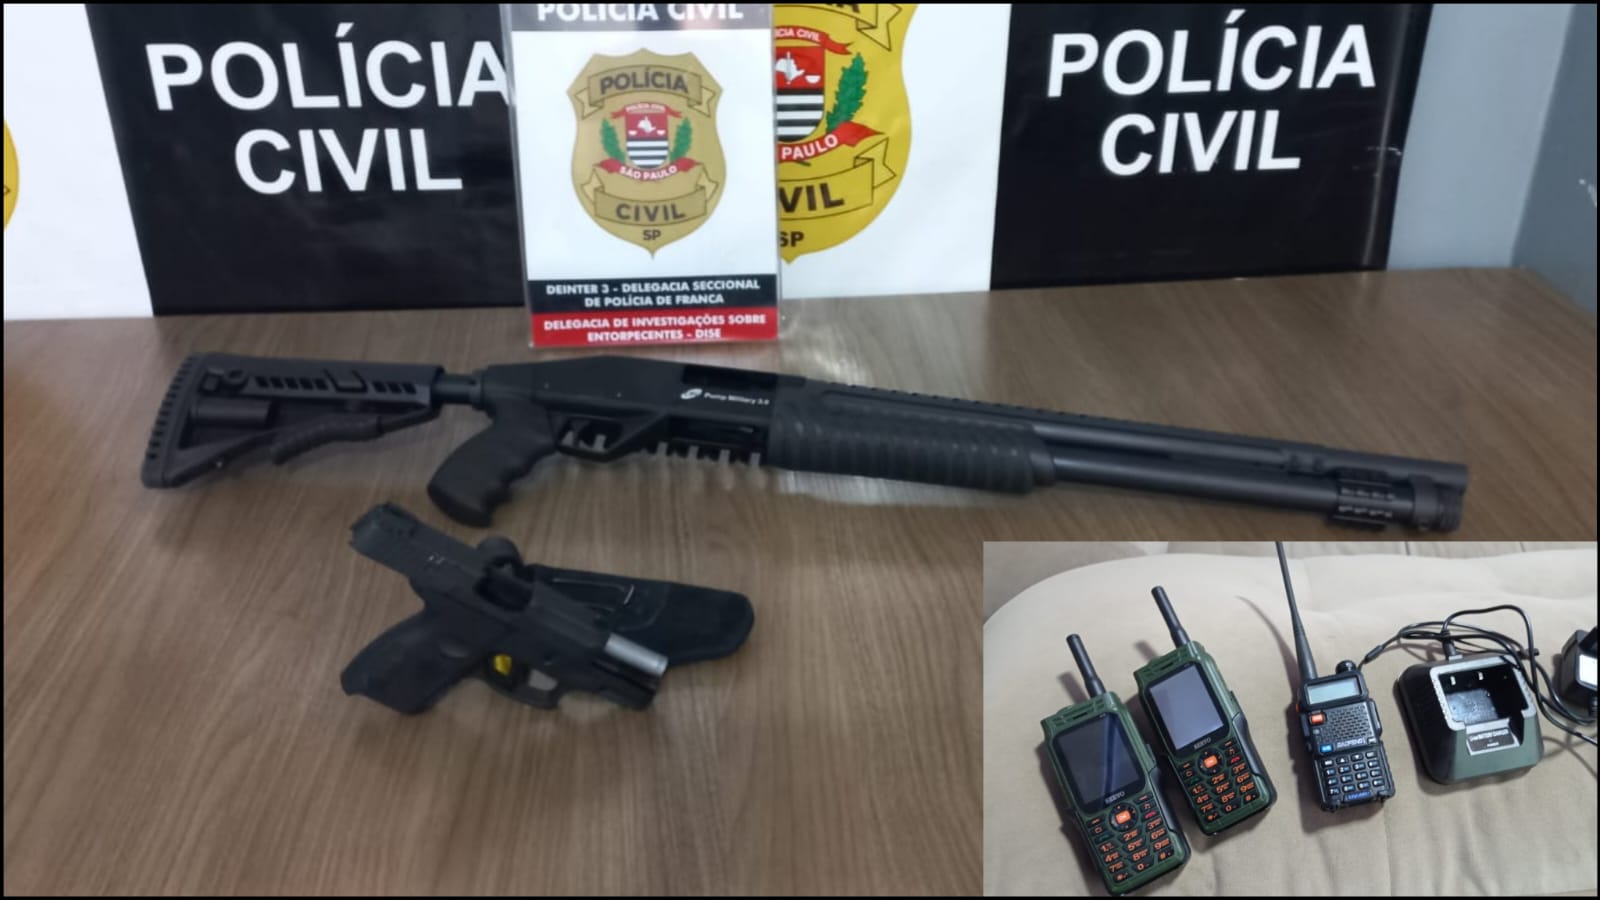 Após denúncia Polícia Civil de Franca apreende armas que possivelmente seriam usadas para cometer crimes